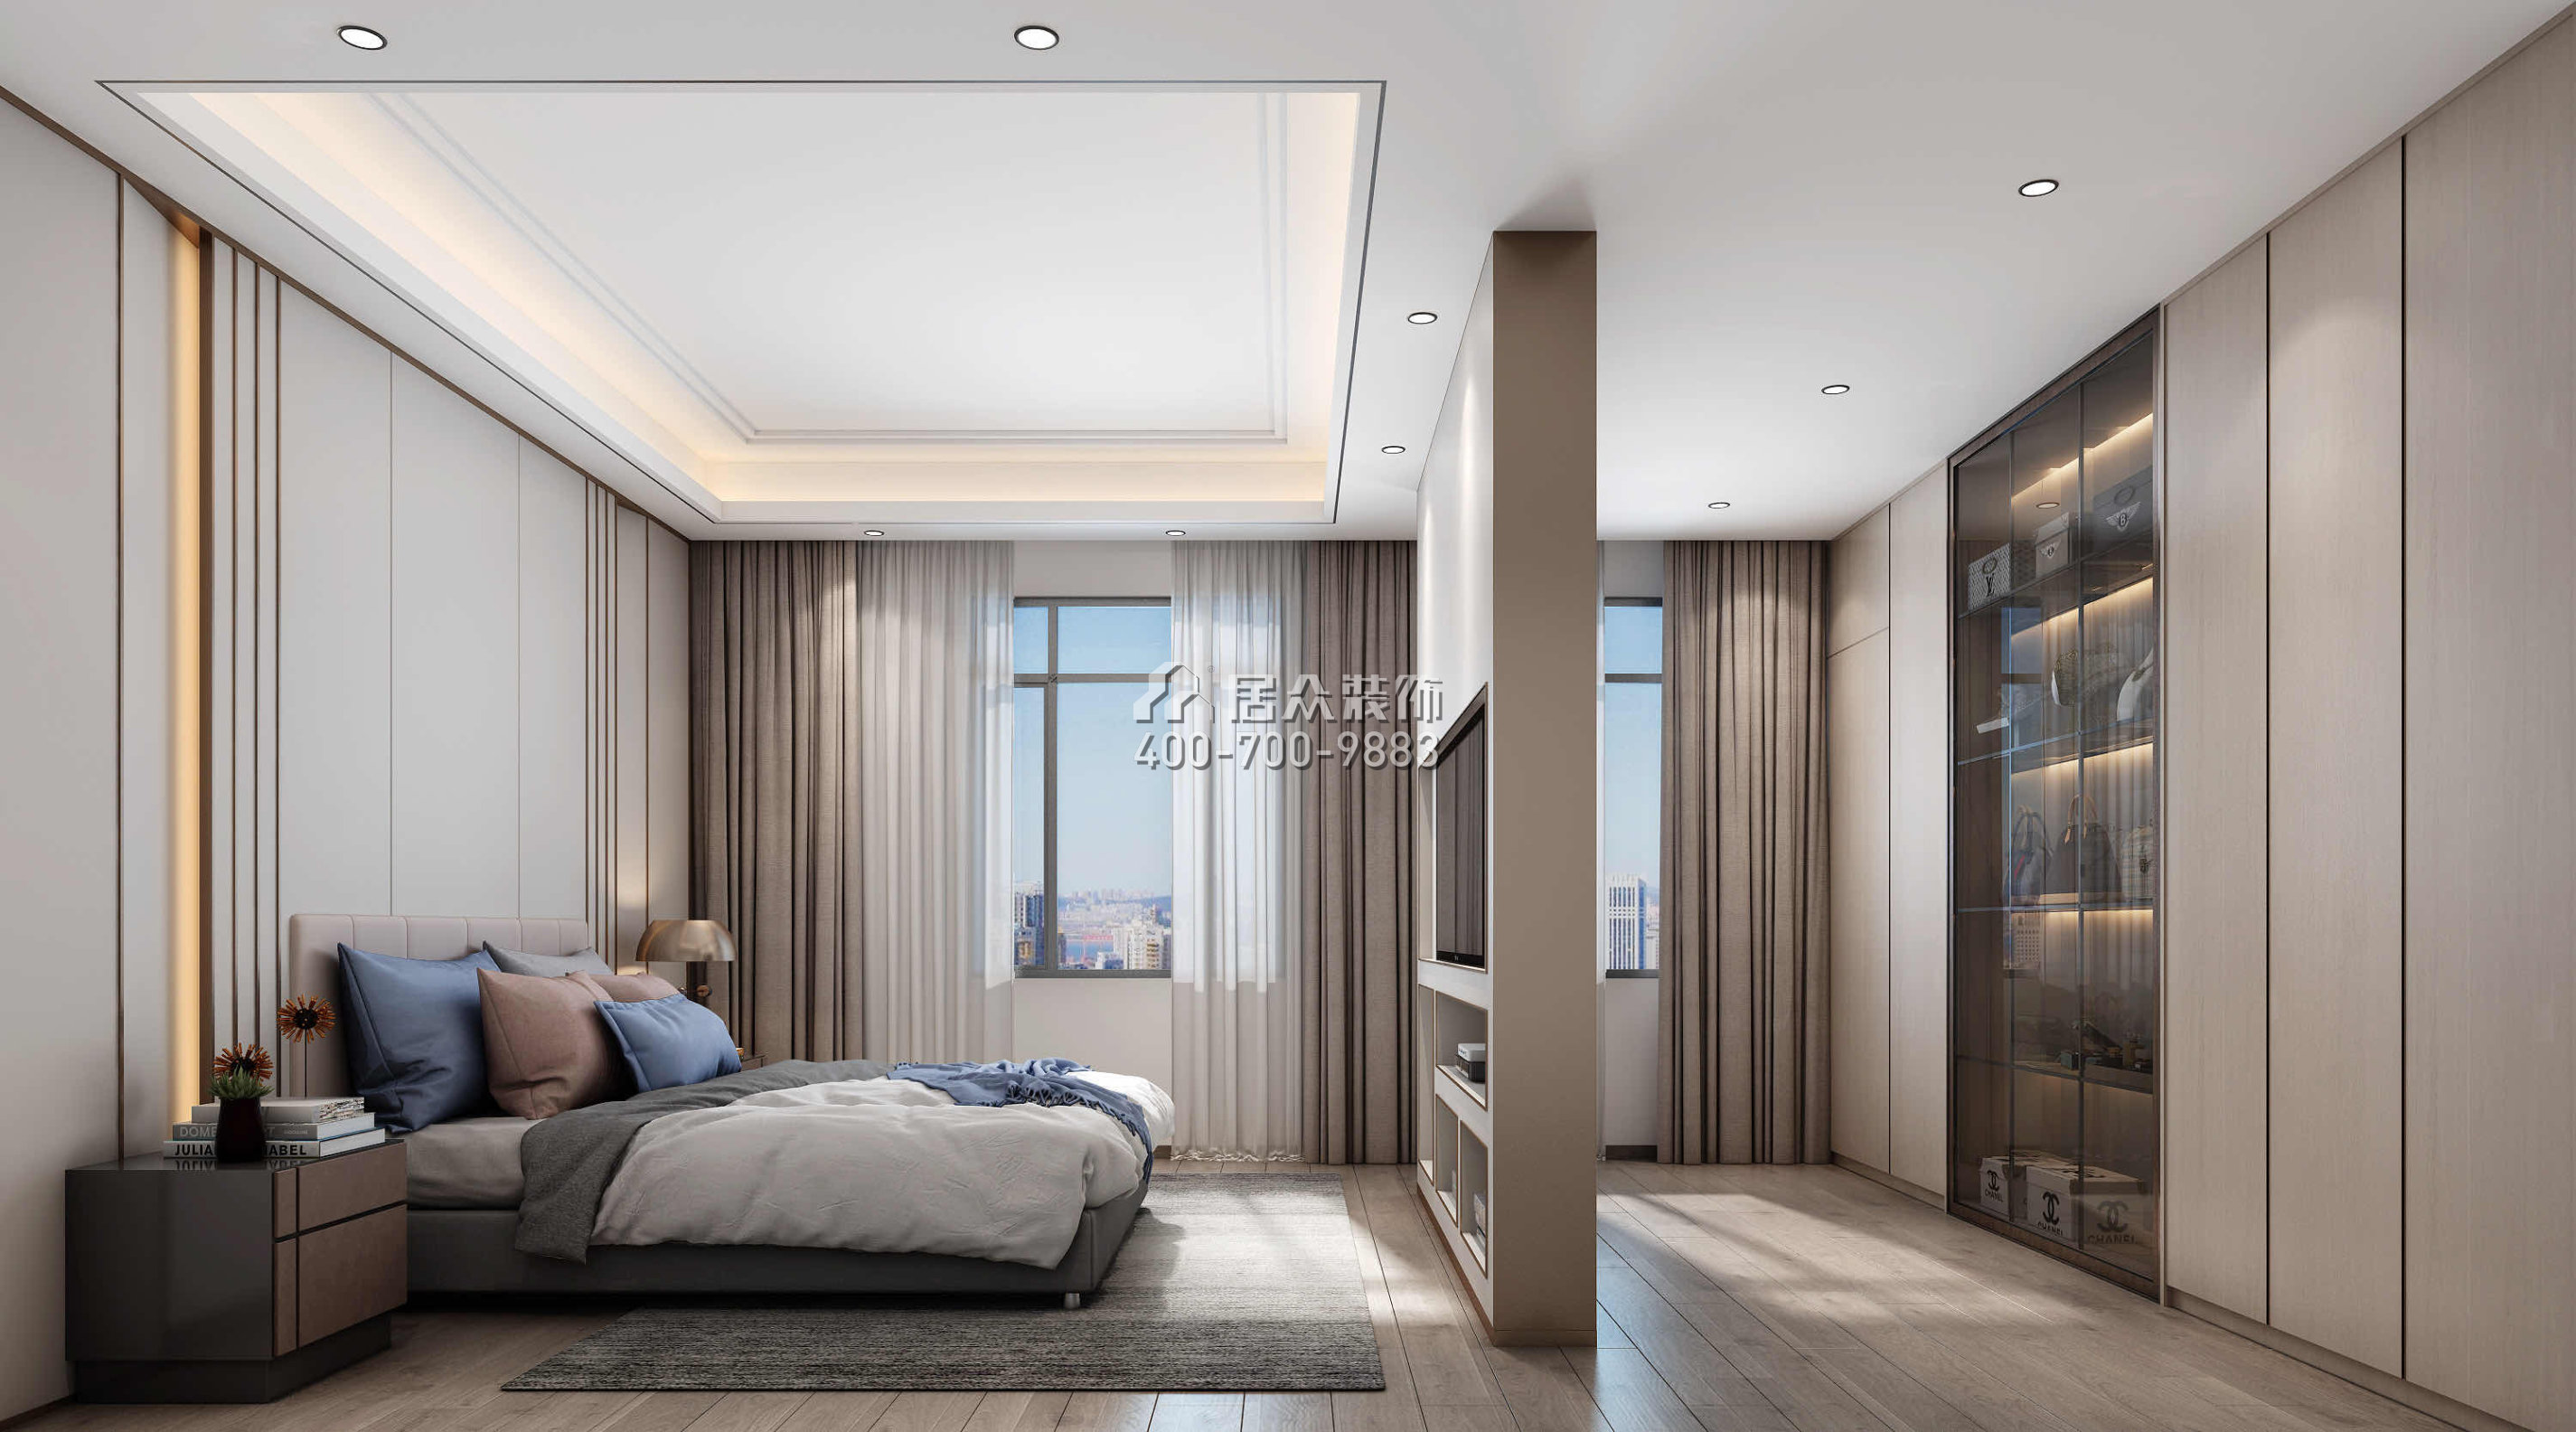 中信御园220平方米现代简约风格平层户型卧室装修效果图